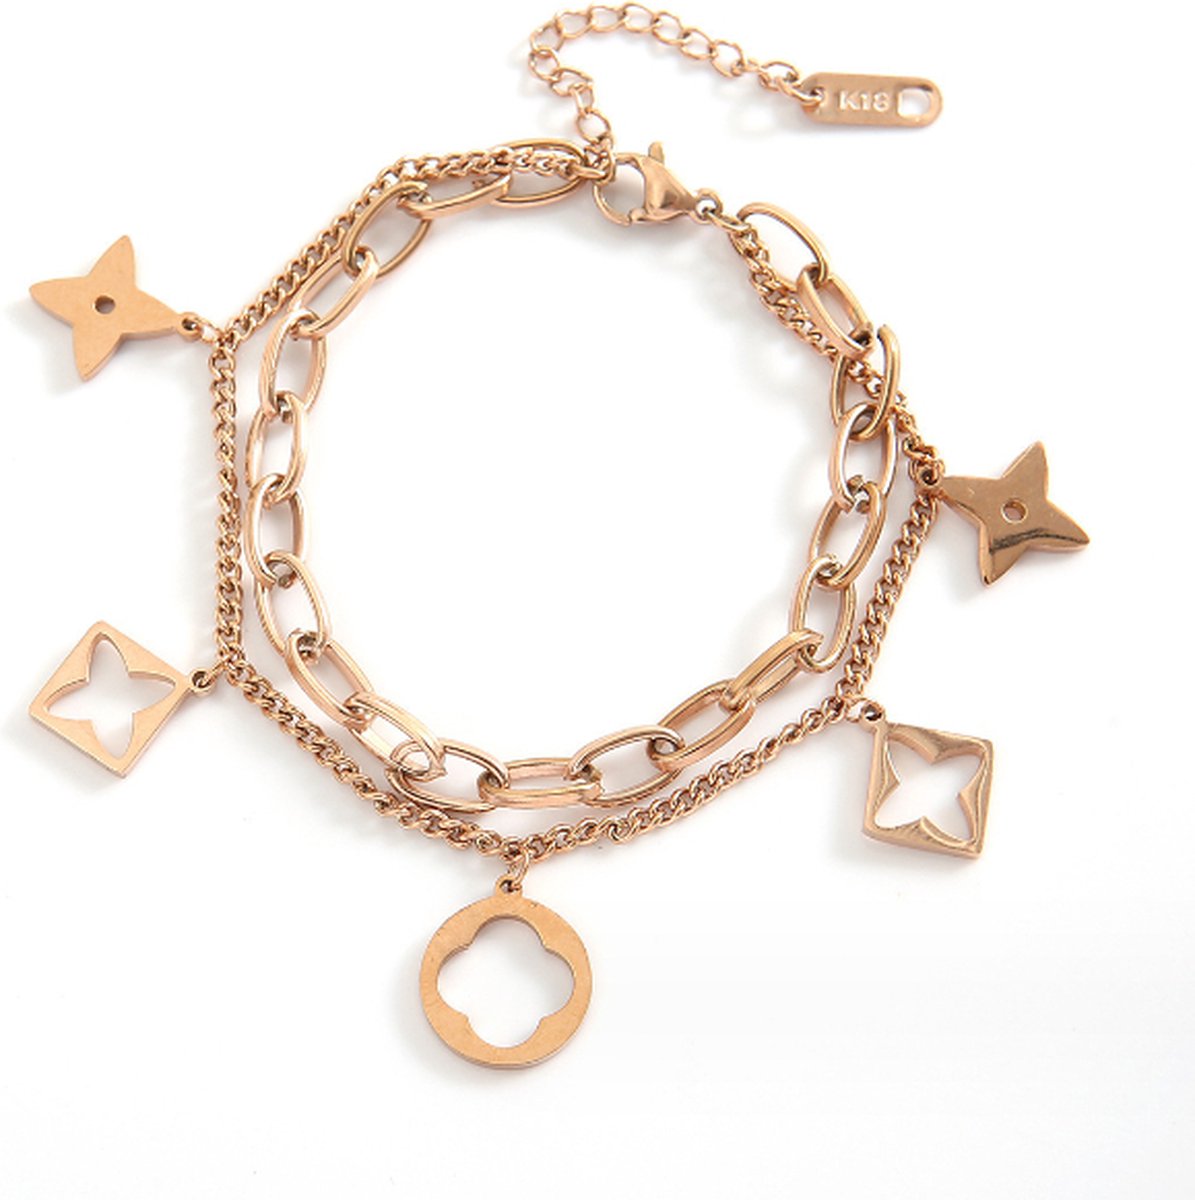 Bedel armband Rosegoud - armband met bedeltjes rosegoud met geschenkverpakking van Sophie Siero